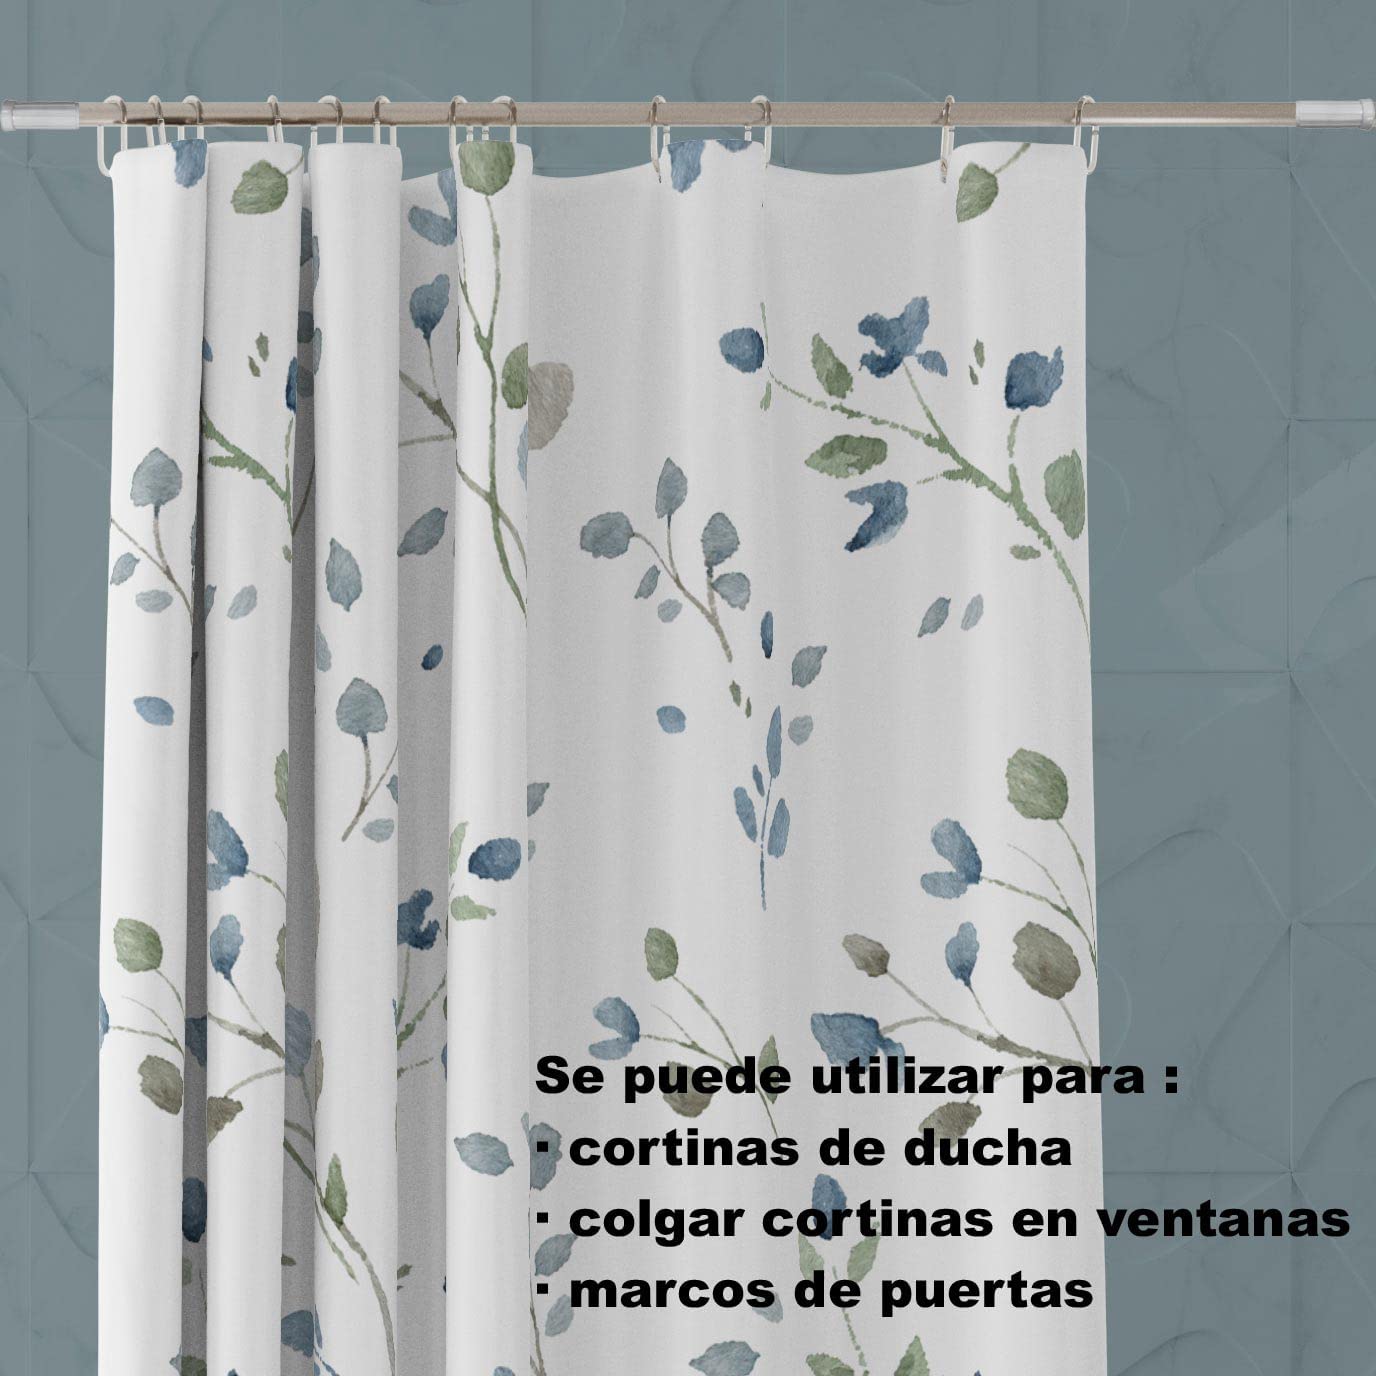 HOME MERCURY - Barra extensible para ropero y cortina de ducha